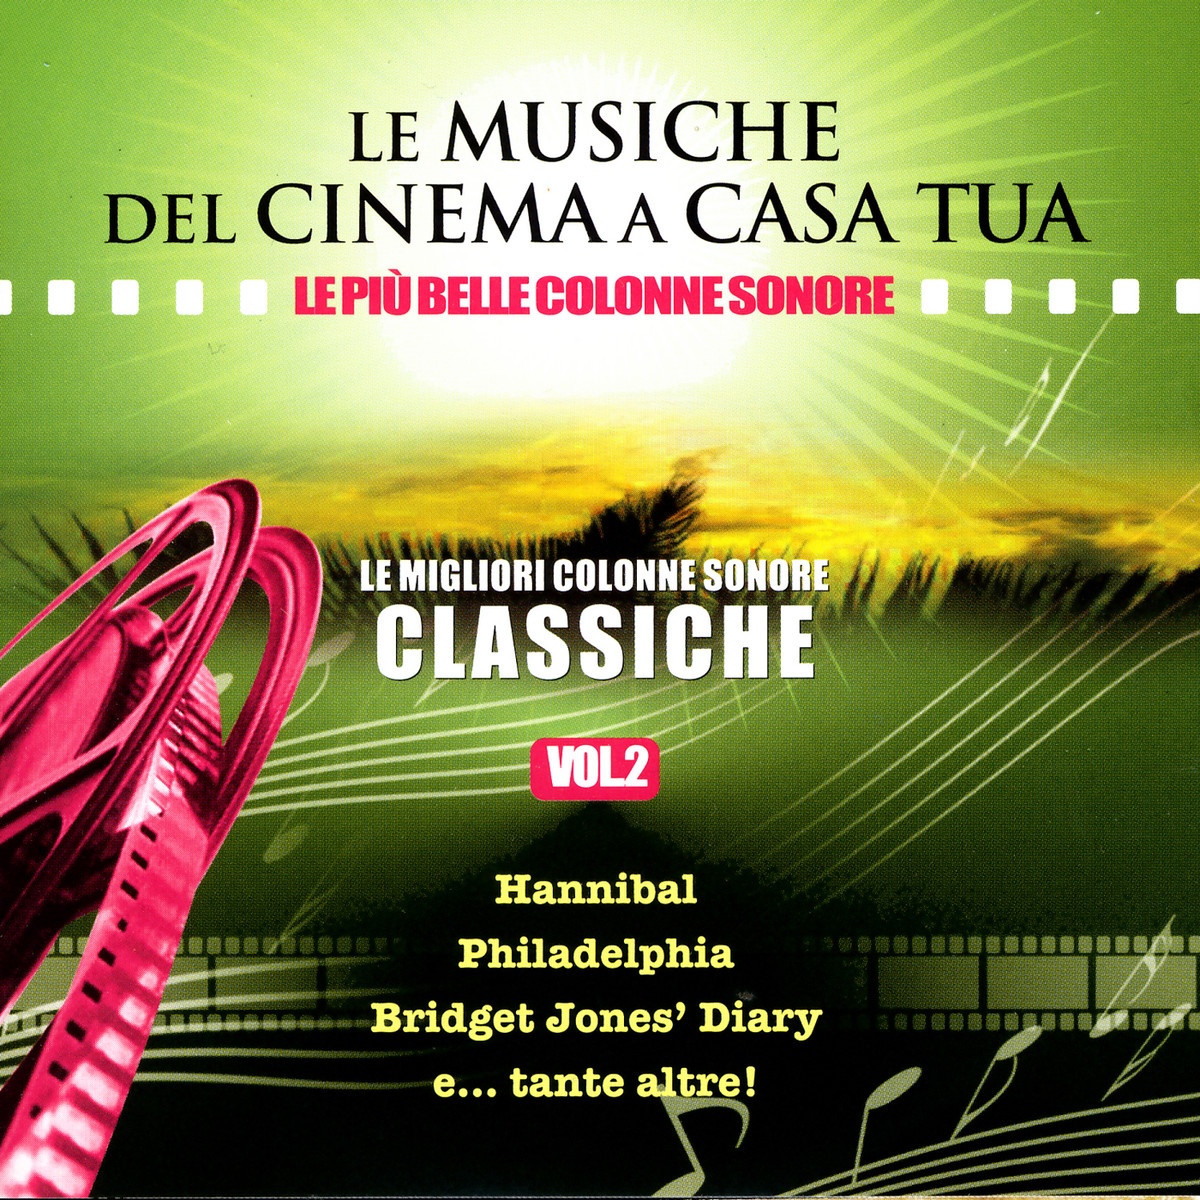 Le Musiche Del Cinema A Casa Tua, Vol. 2: Le Migliori Colonne Sonore Classiche